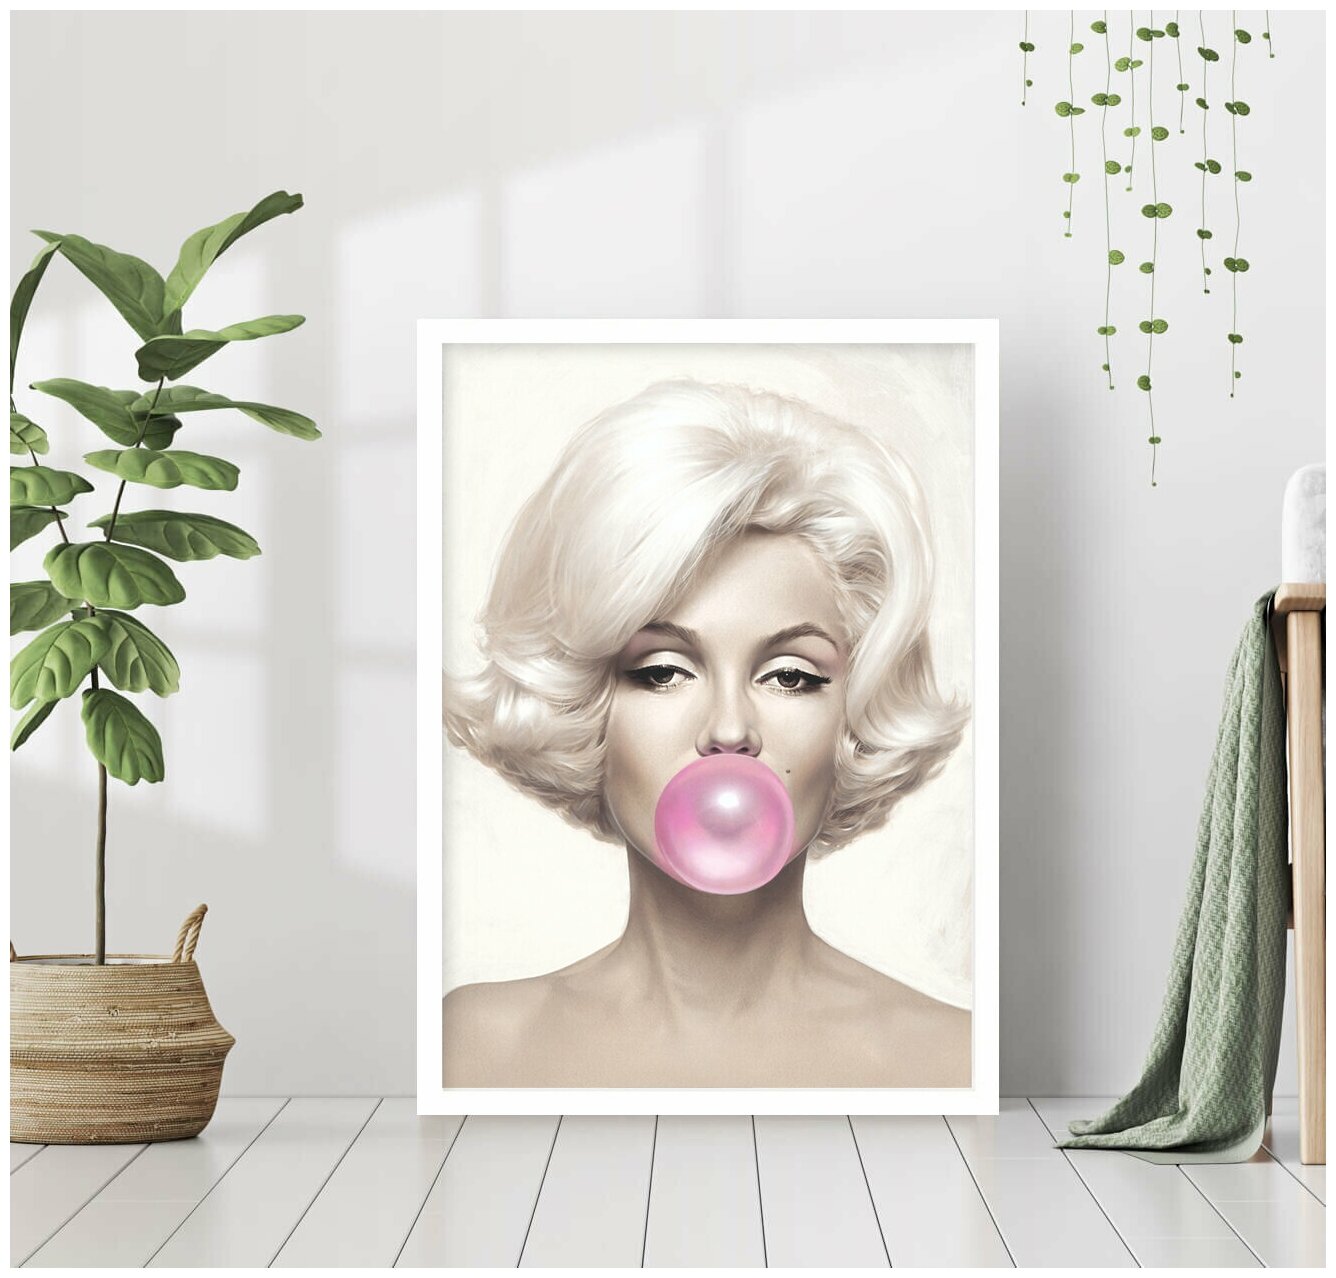 Постер В рамке "Мэрилин Монро с жвачкой" 40 на 50 (белая рама) / Картина для интерьера / Плакат / Постер на стену / Интерьерные картины